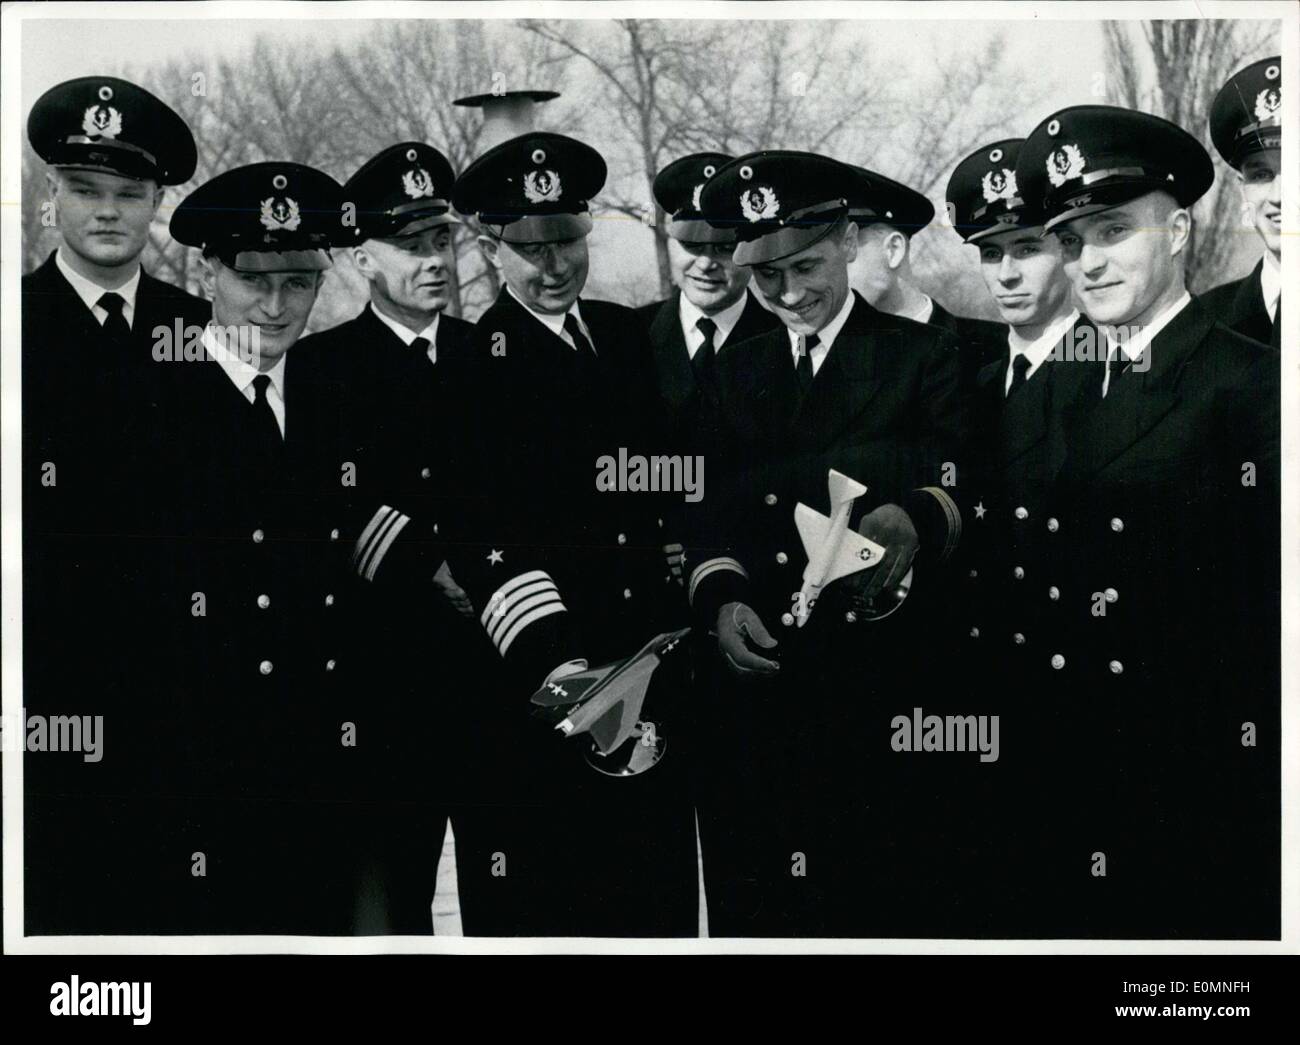 20. März 1956 - werden zehn deutschen Marines nach Amerika Morgen zum Trainingsbeginn als Marine Piloten zu fliegen. Bei ihrer Rückkehr werden sie als Ausbilder im Marine-Flug handeln. Abgebildet sind einige der Marines fliegen aus, einschließlich Captain Walter Gaul(holding model mid-left) und Kapitän Leutnant Hans Noack(middle right) Stockfoto